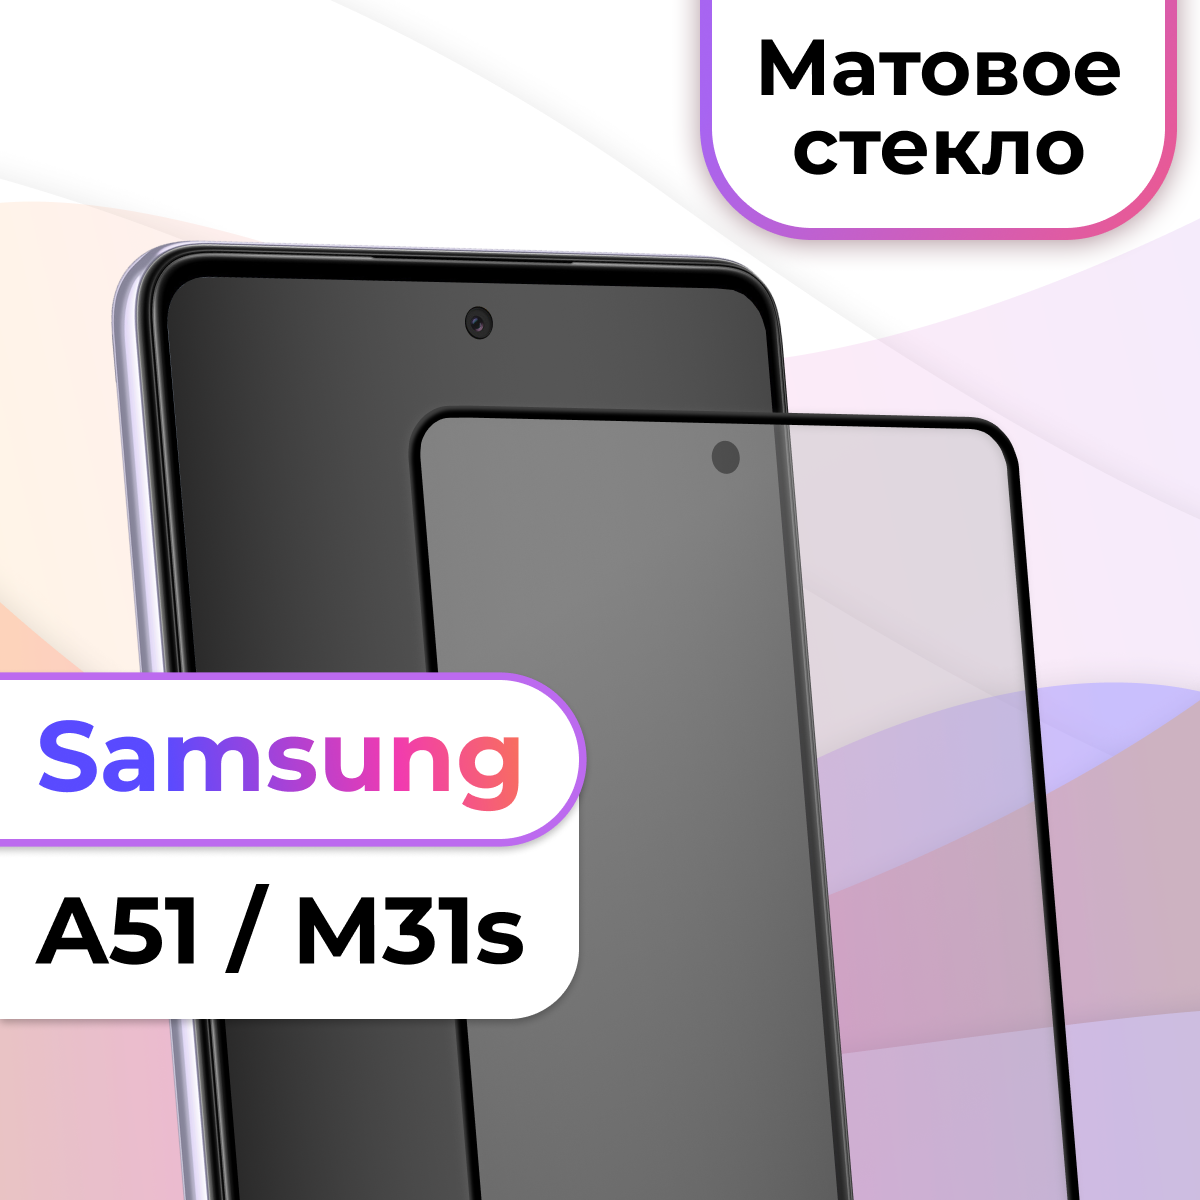 Защитное стекло на телефон Samsung Galaxy A51 M31s / Матовое противоударное стекло на весь экран для смартфона Самсунг Галакси А51 М31с